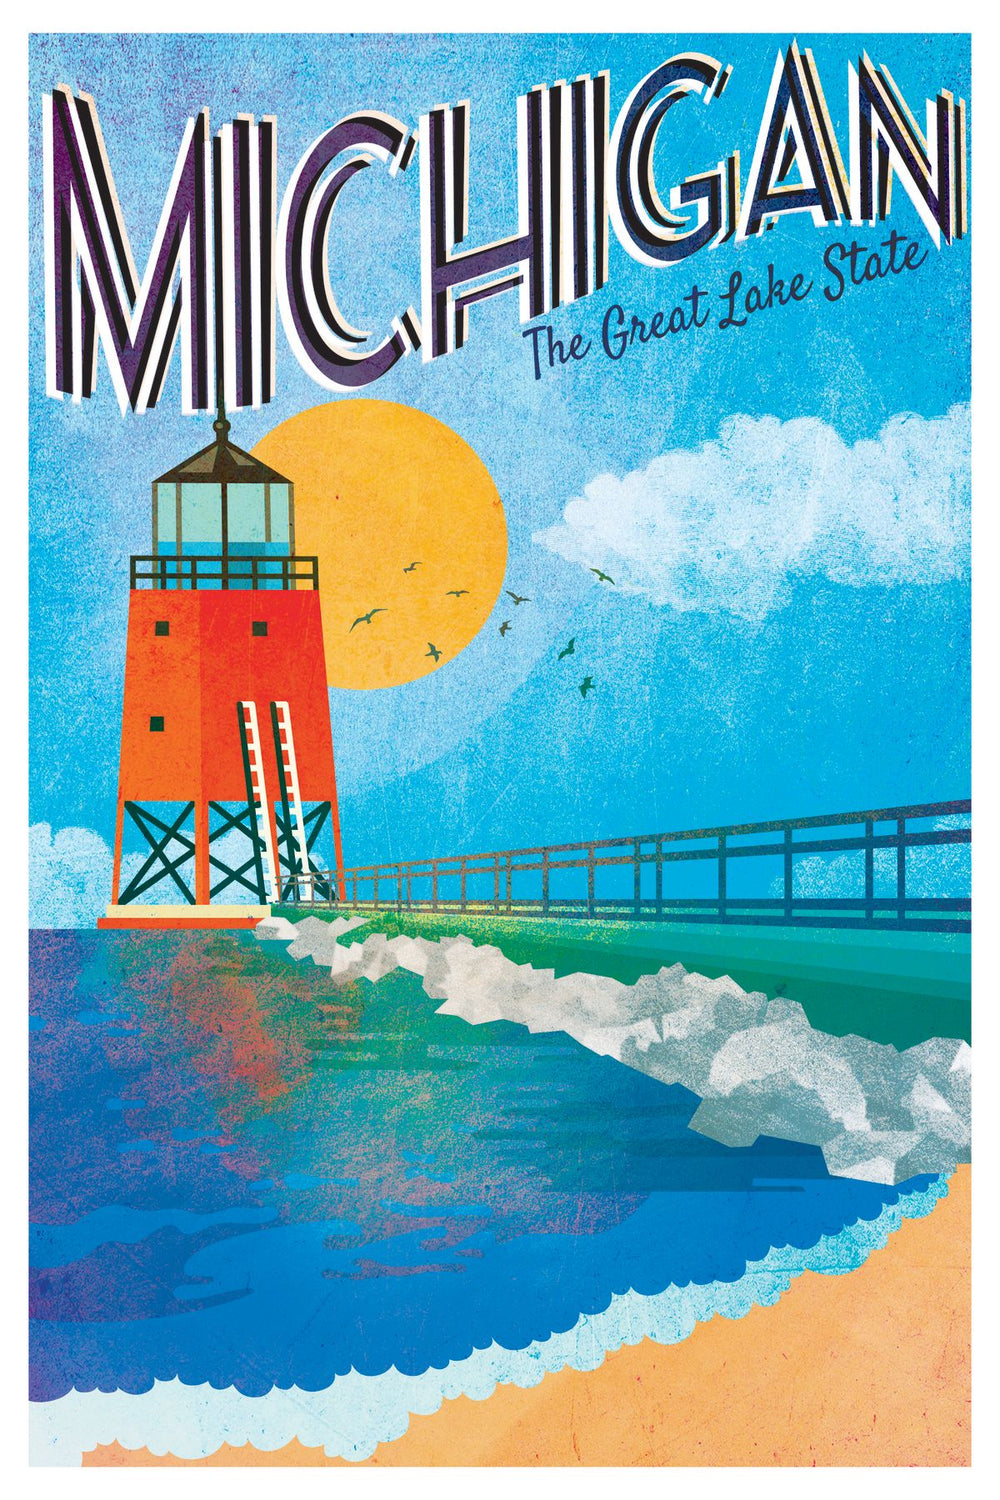 Lake Michigan Poster